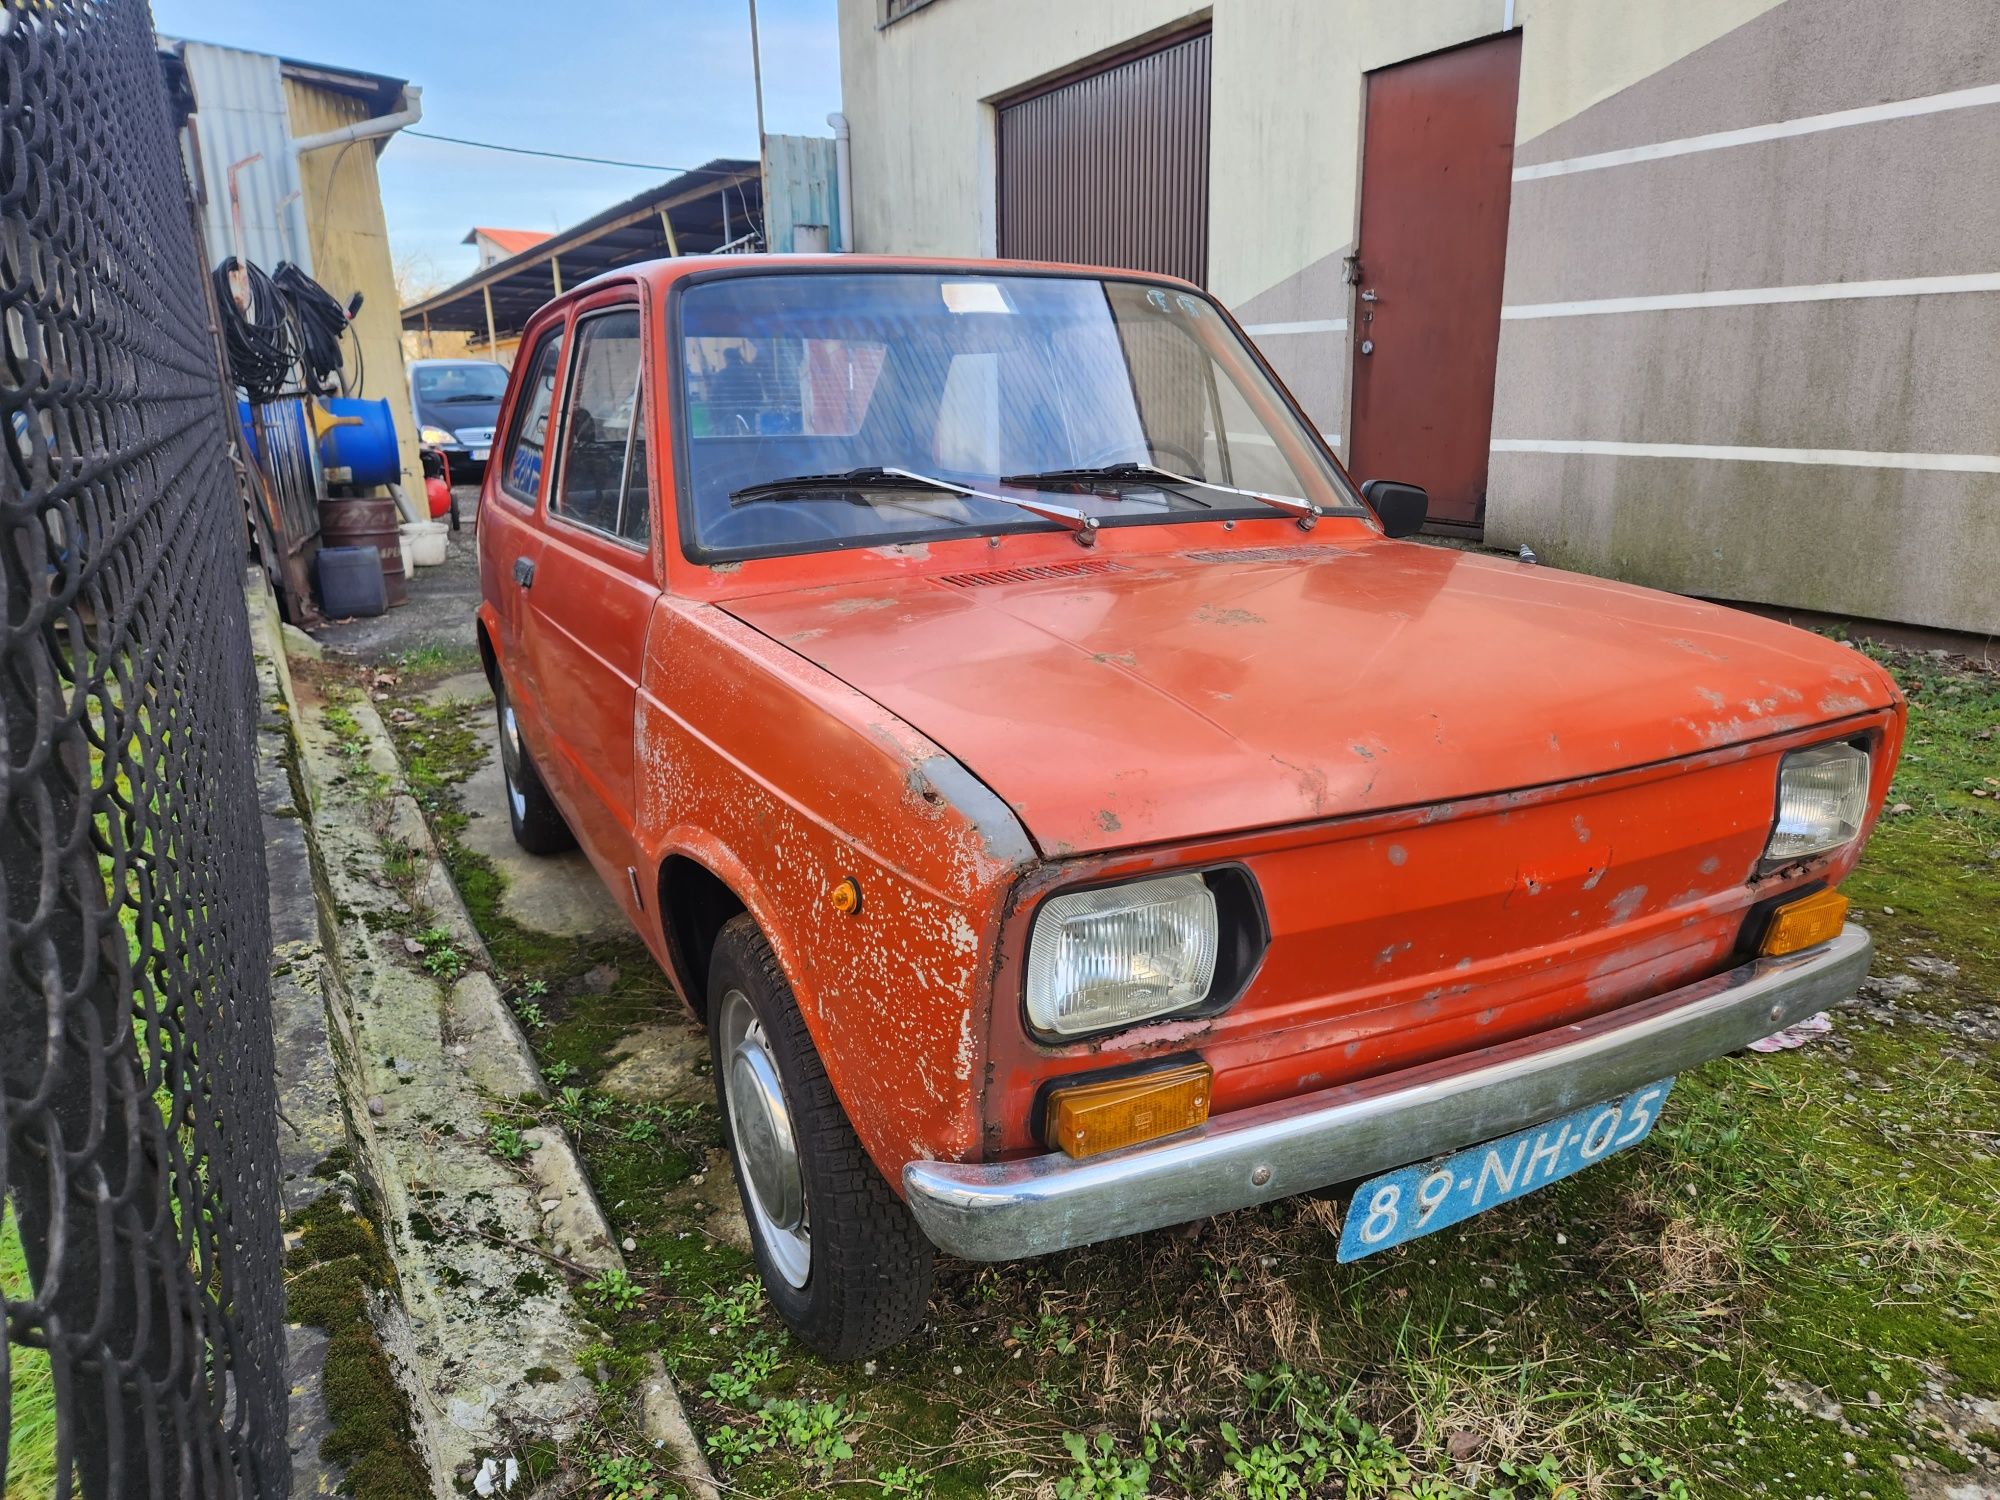 Fiat 133 fajy Malo spotykany